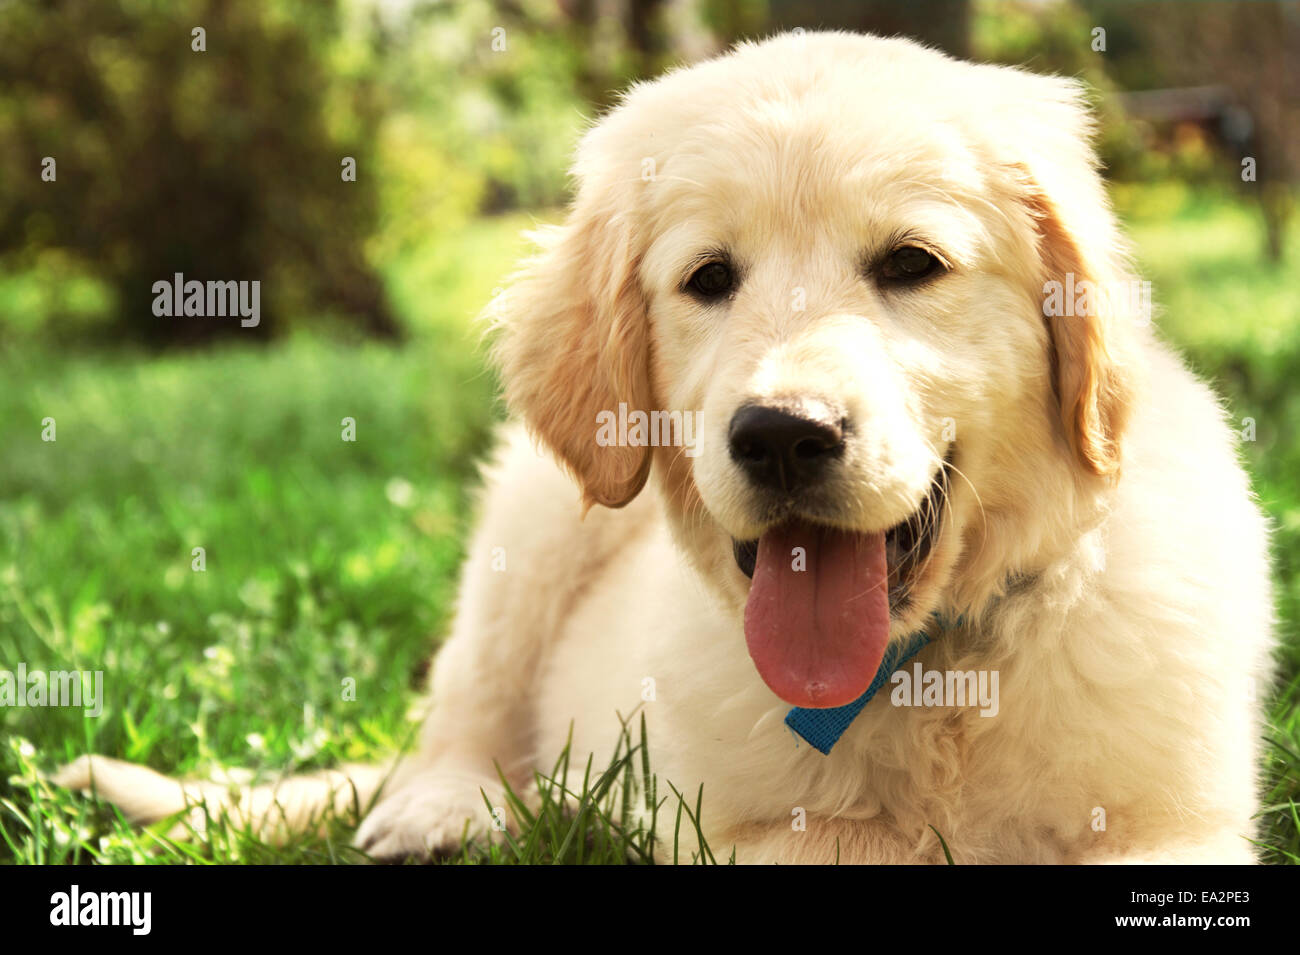 Lindo cachorro golden retriever tumbado sobre el césped Foto de stock